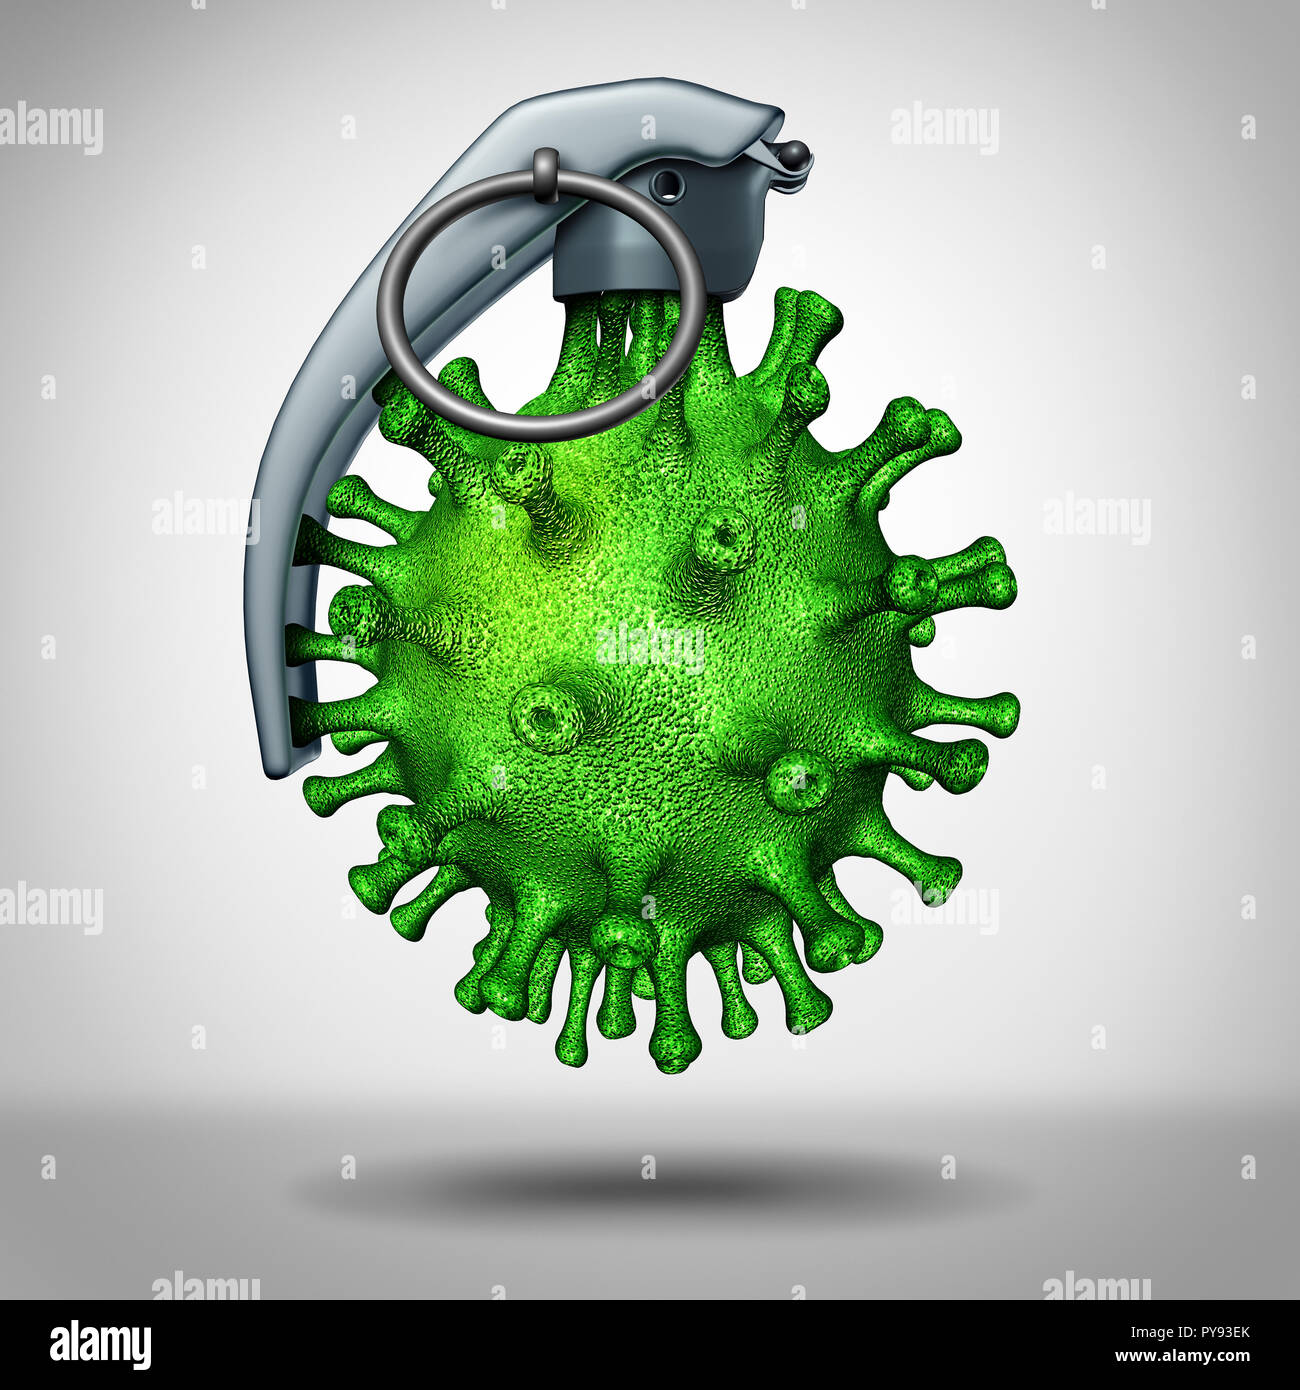 Virus bomba minaccia medica come una malattia pericolosa shapred patogeno come una bomba a mano come un icona per la guerra biologica e pericoli. Foto Stock